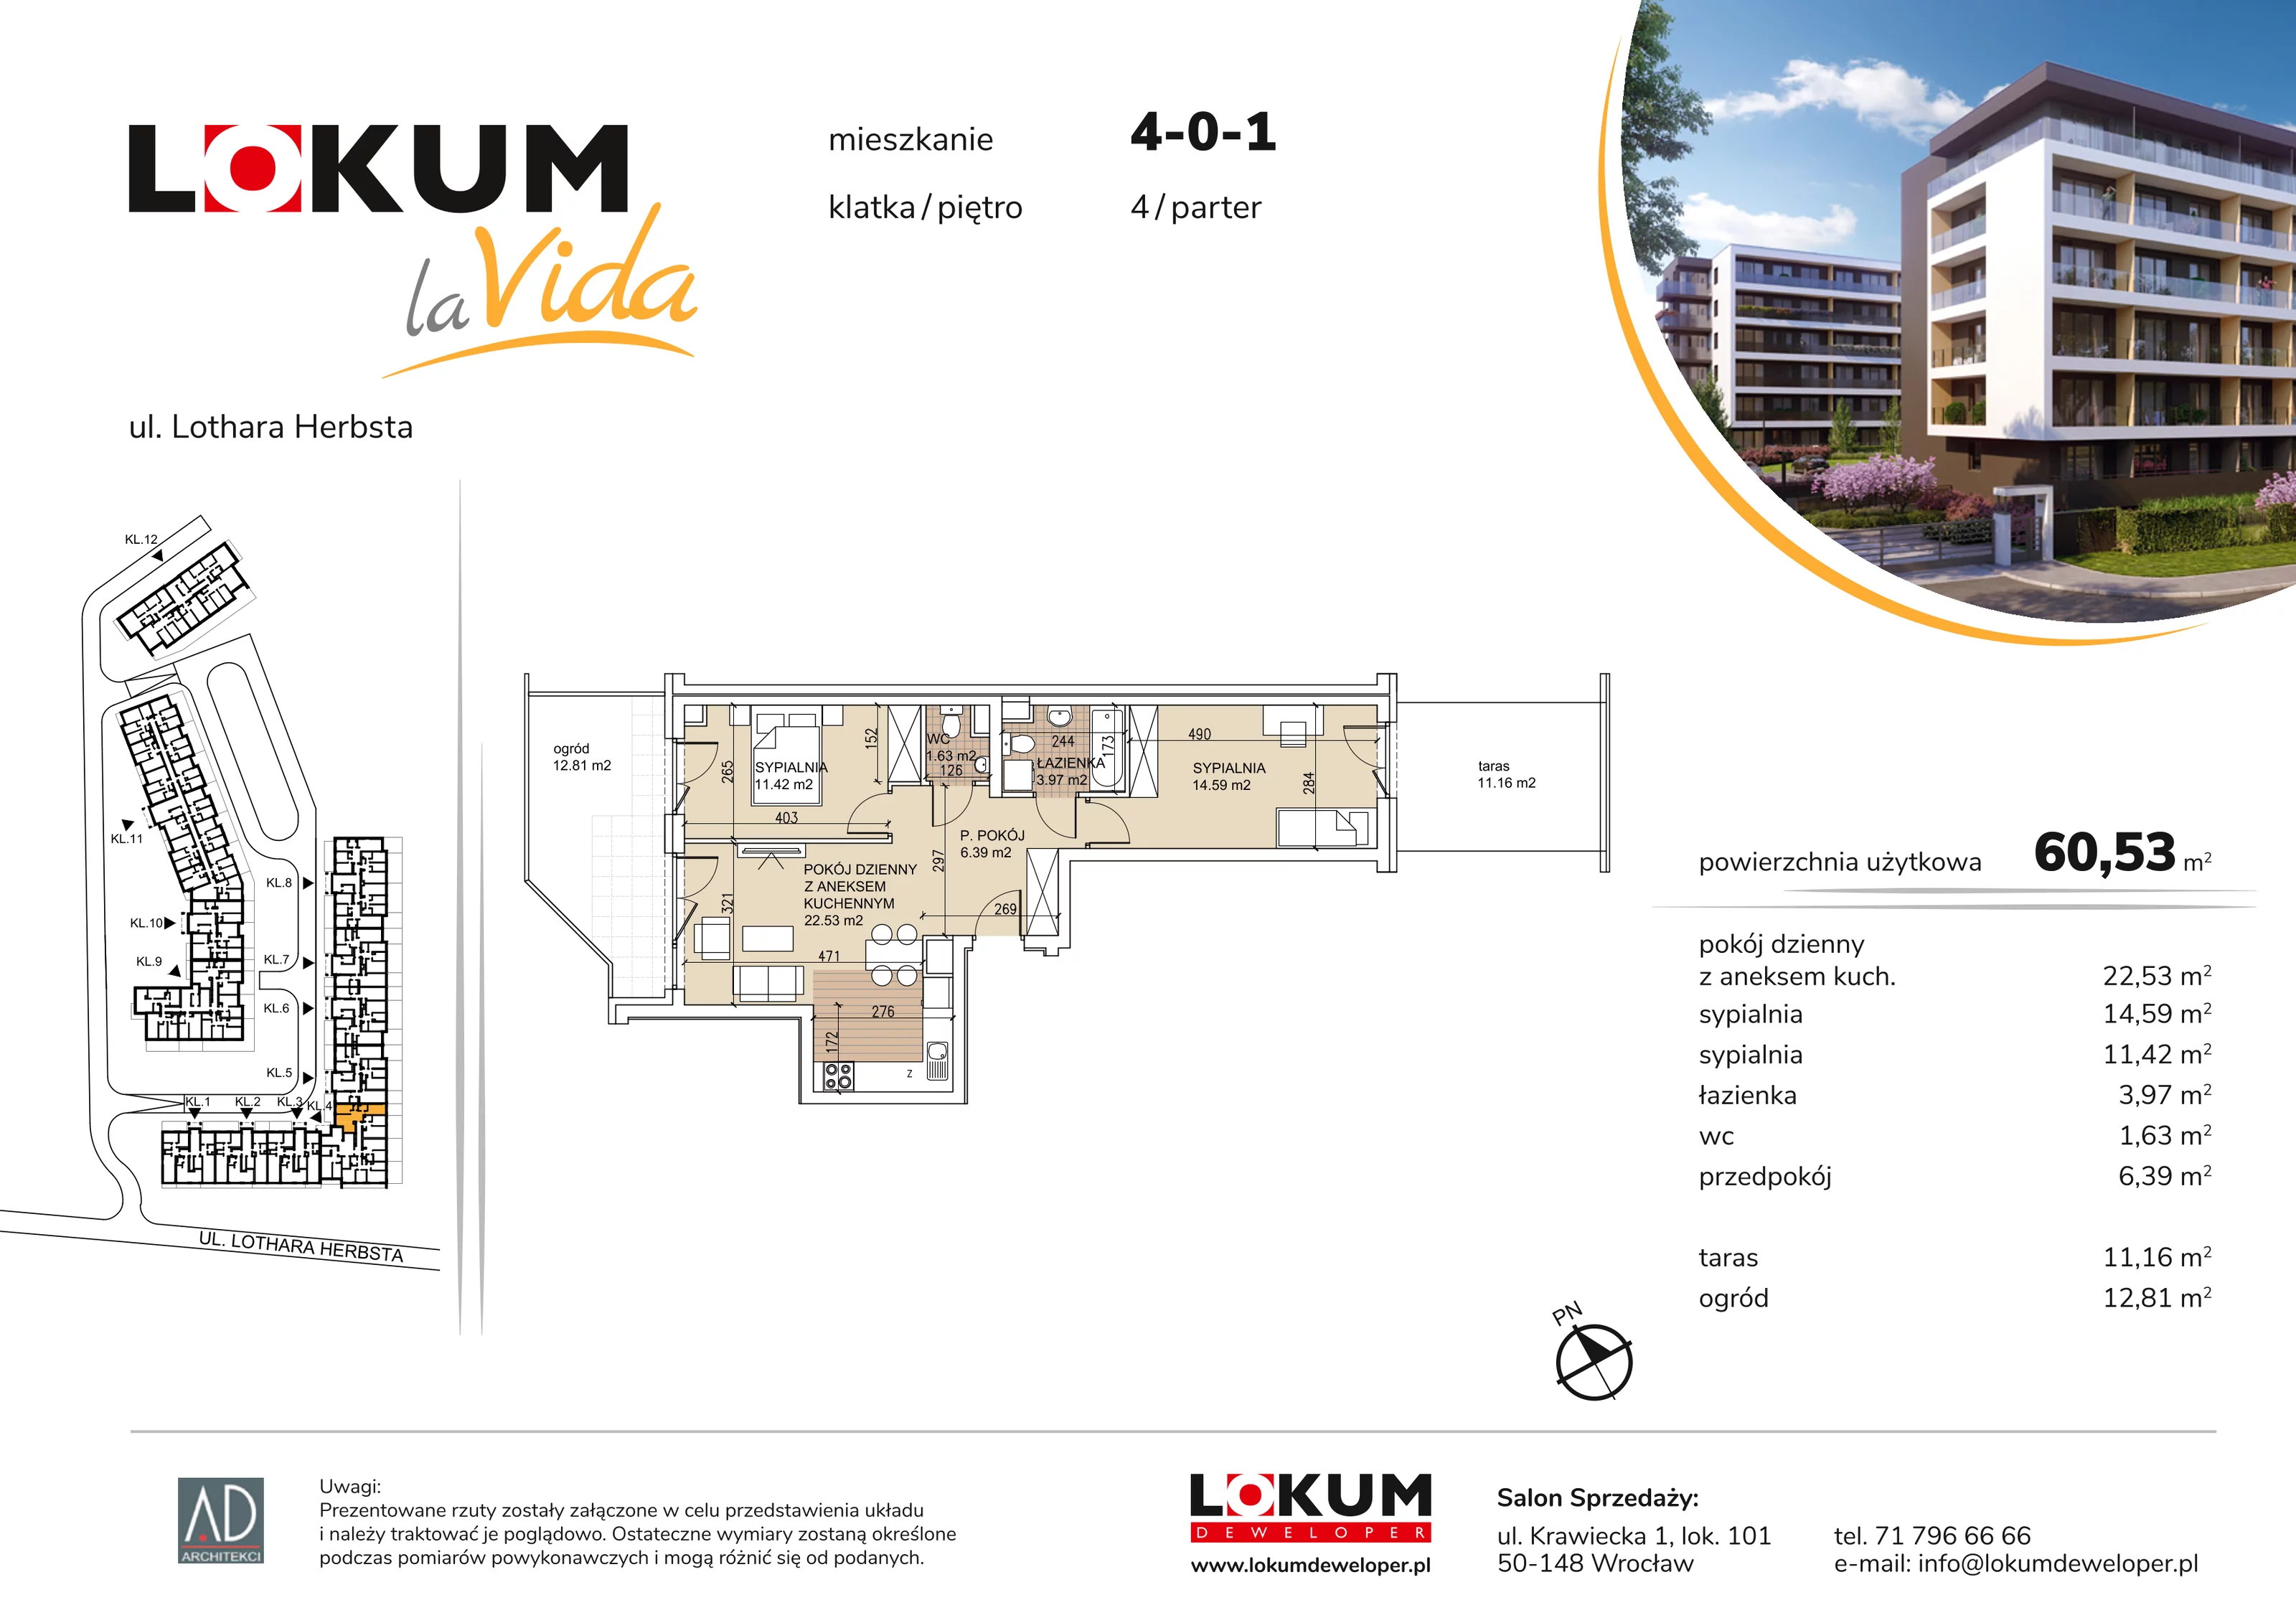 Mieszkanie 60,53 m², parter, oferta nr 4-0-1, Lokum la Vida, Wrocław, Sołtysowice, ul. Lothara Herbsta